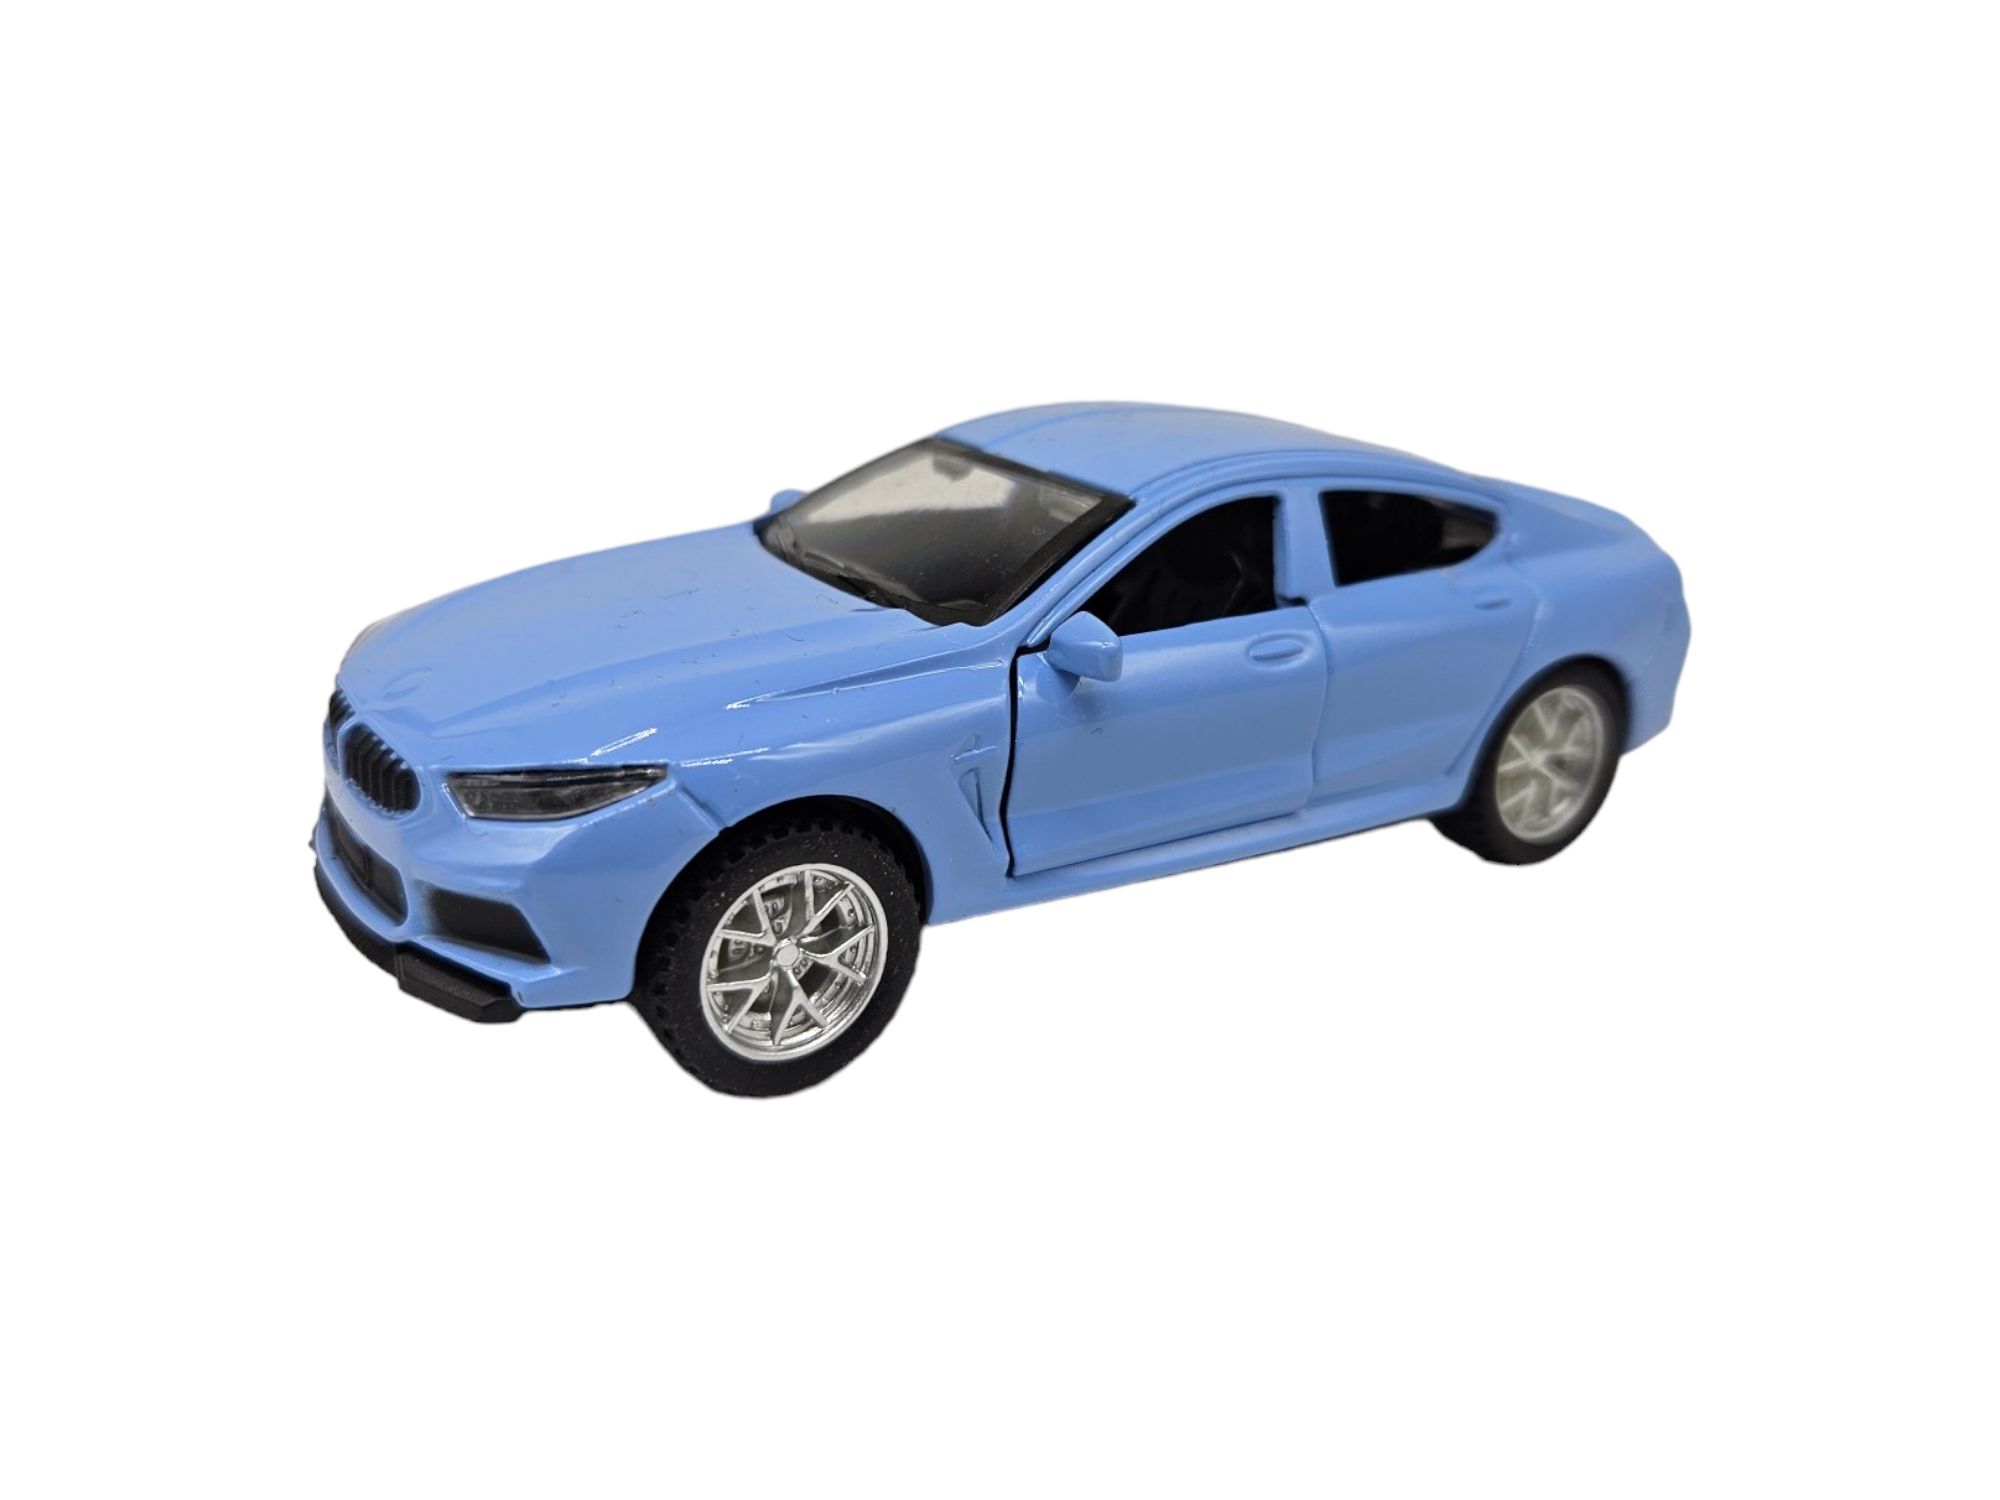 Masinuta metalica BMW,Usi mobile,Albastru deschis, Scara 1:32, 11cm